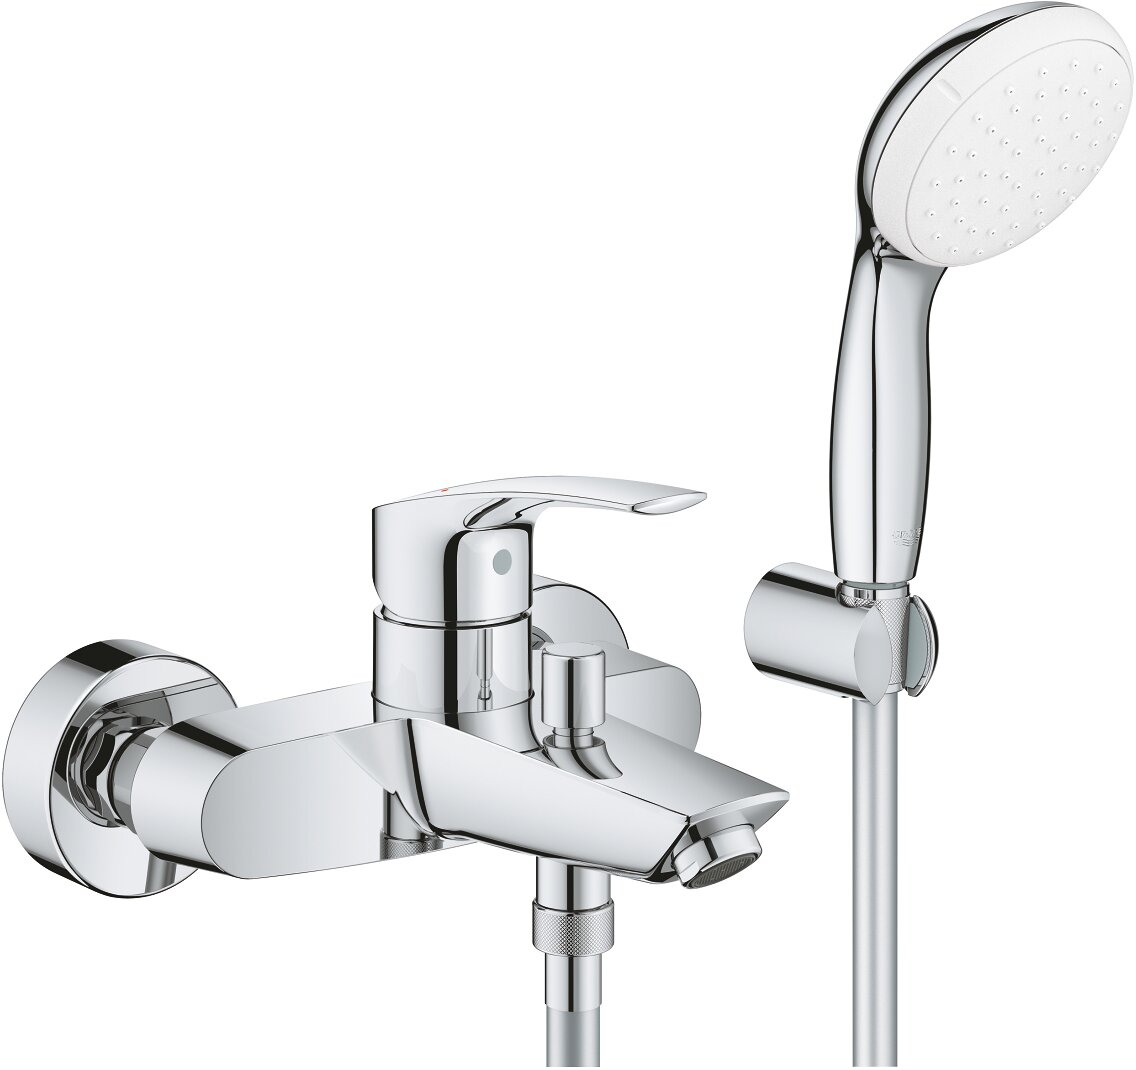 Смеситель Eurosmart 33302003 для ванны настенный,однорычажный, ручной душ, держатель шланг, хром - фото 1